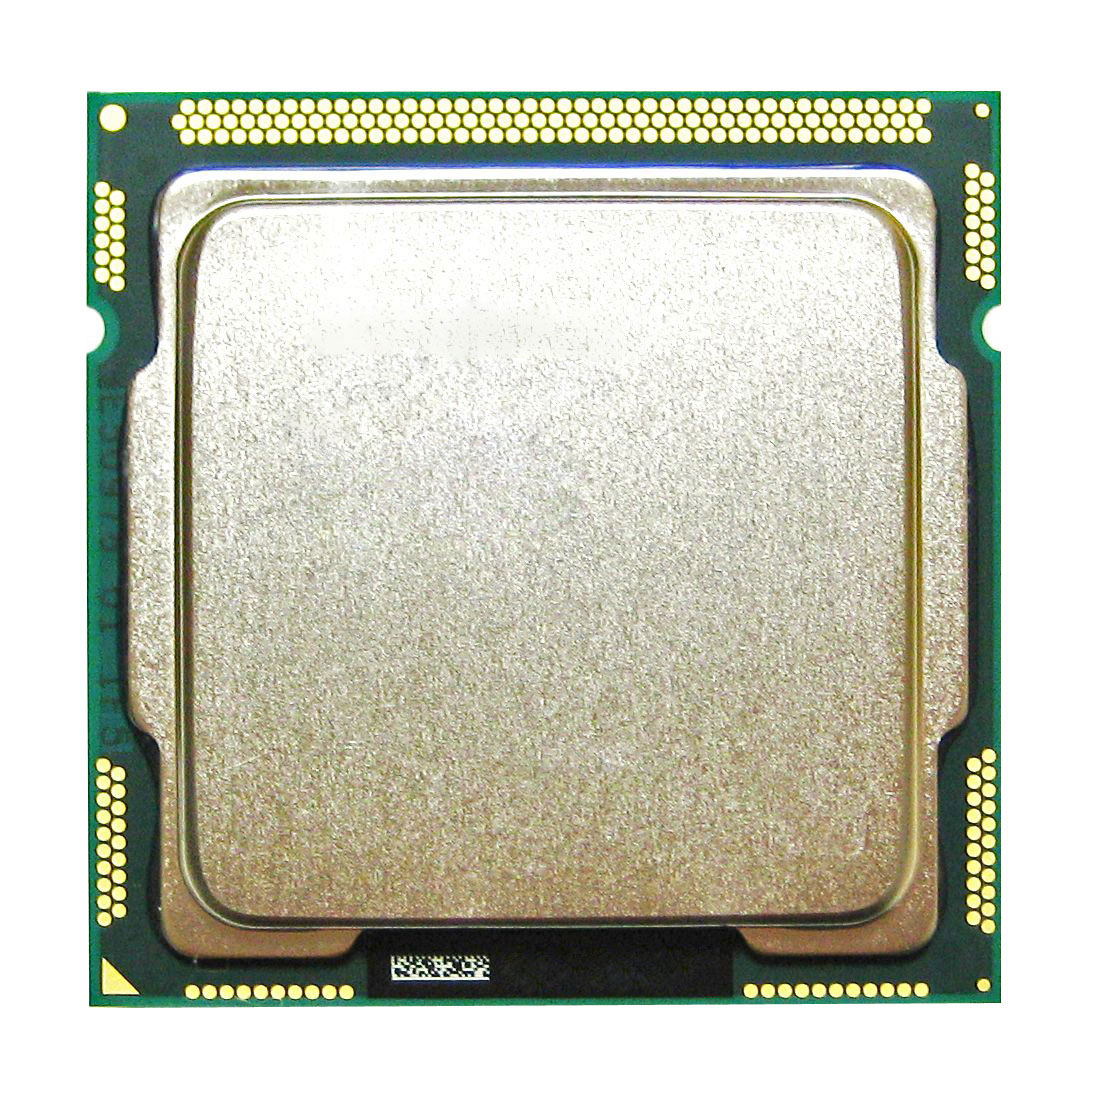 XU951AV HP 3.30GHz 5.00GT/s DMI 6MB L3 Cache Intel Core i5-2500 Quad Core Desktop Processor Upgrade